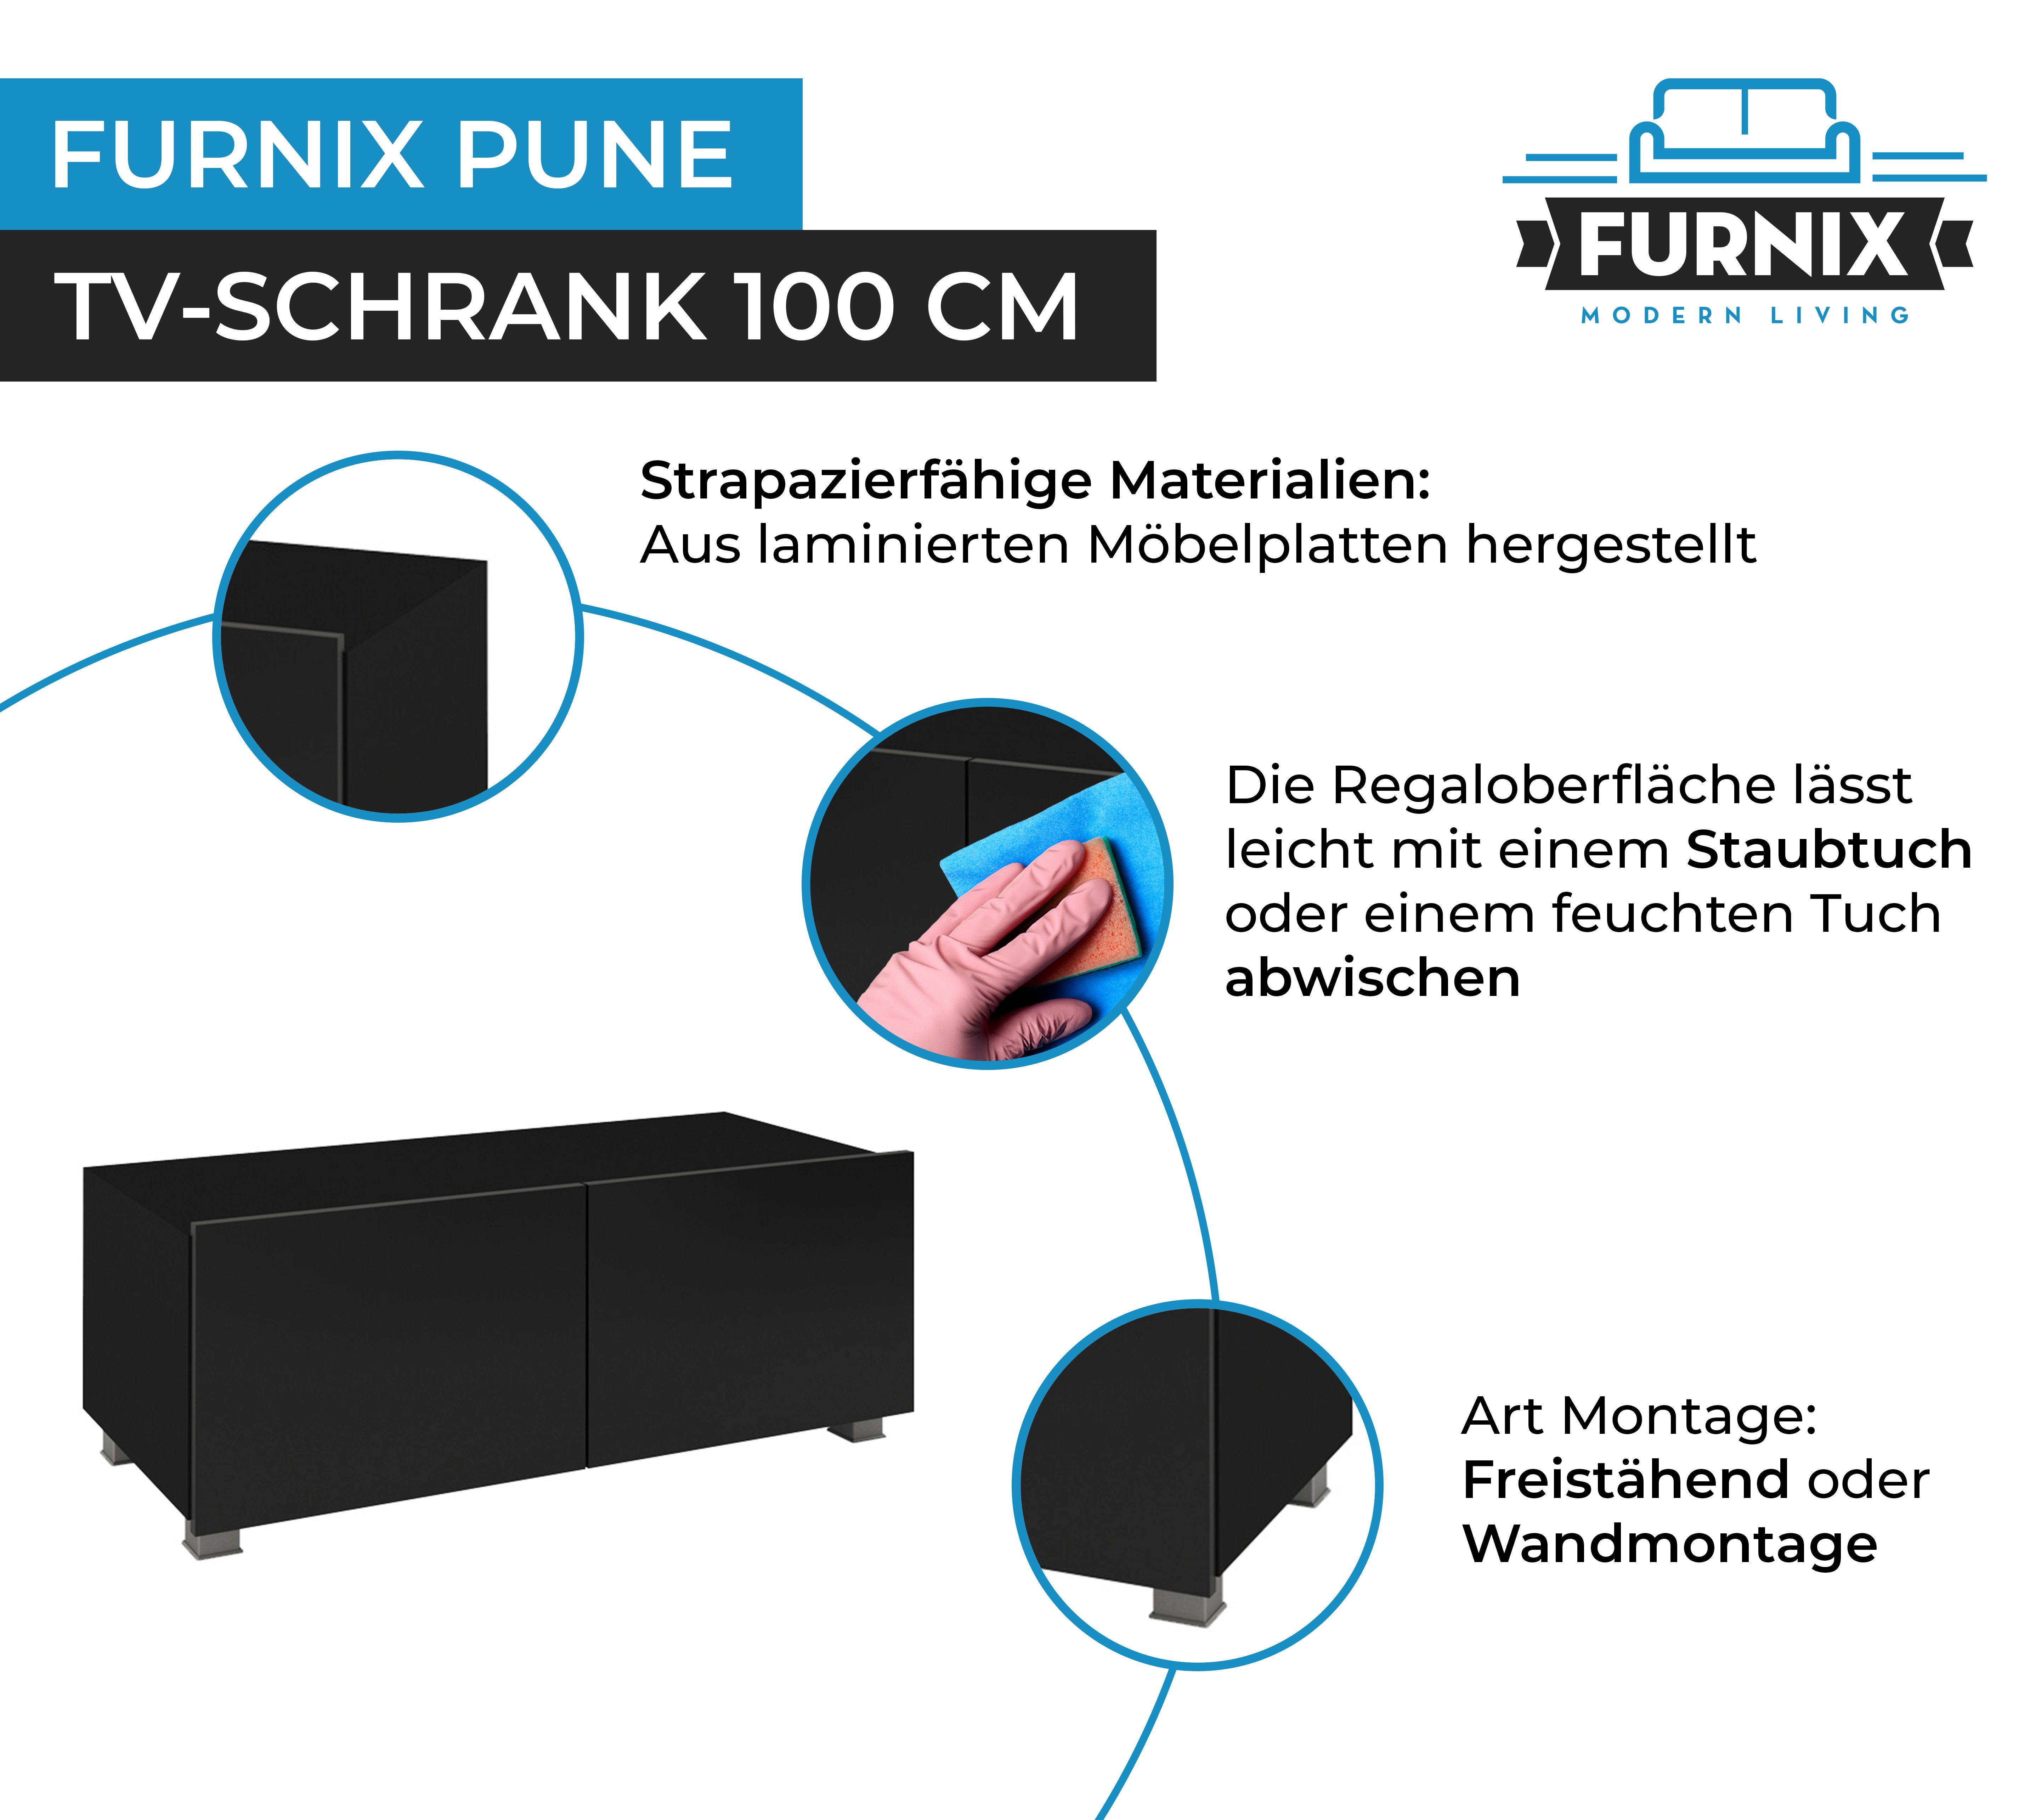 Wohnzimmer fürs Wahl nach Glanz TV-Schrank Schwarz/Schwarz TV-Lowboard 100 Furnix PUNE oder freistähend Wandmontage möglich